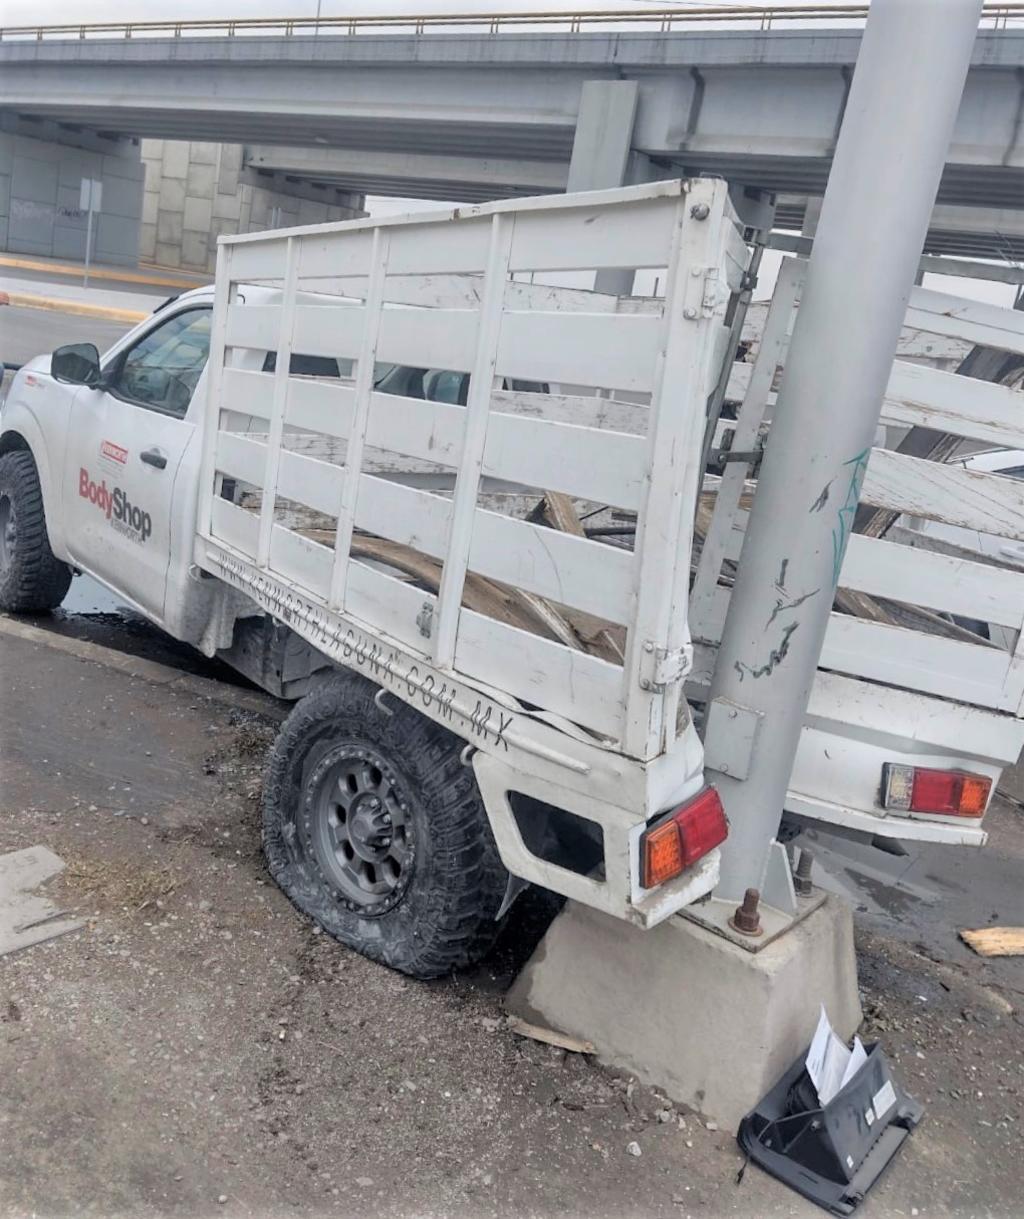 Camioneta se proyecta contra poste tras chocar con otro vehículo frente al fraccionamiento El Roble de Torreón